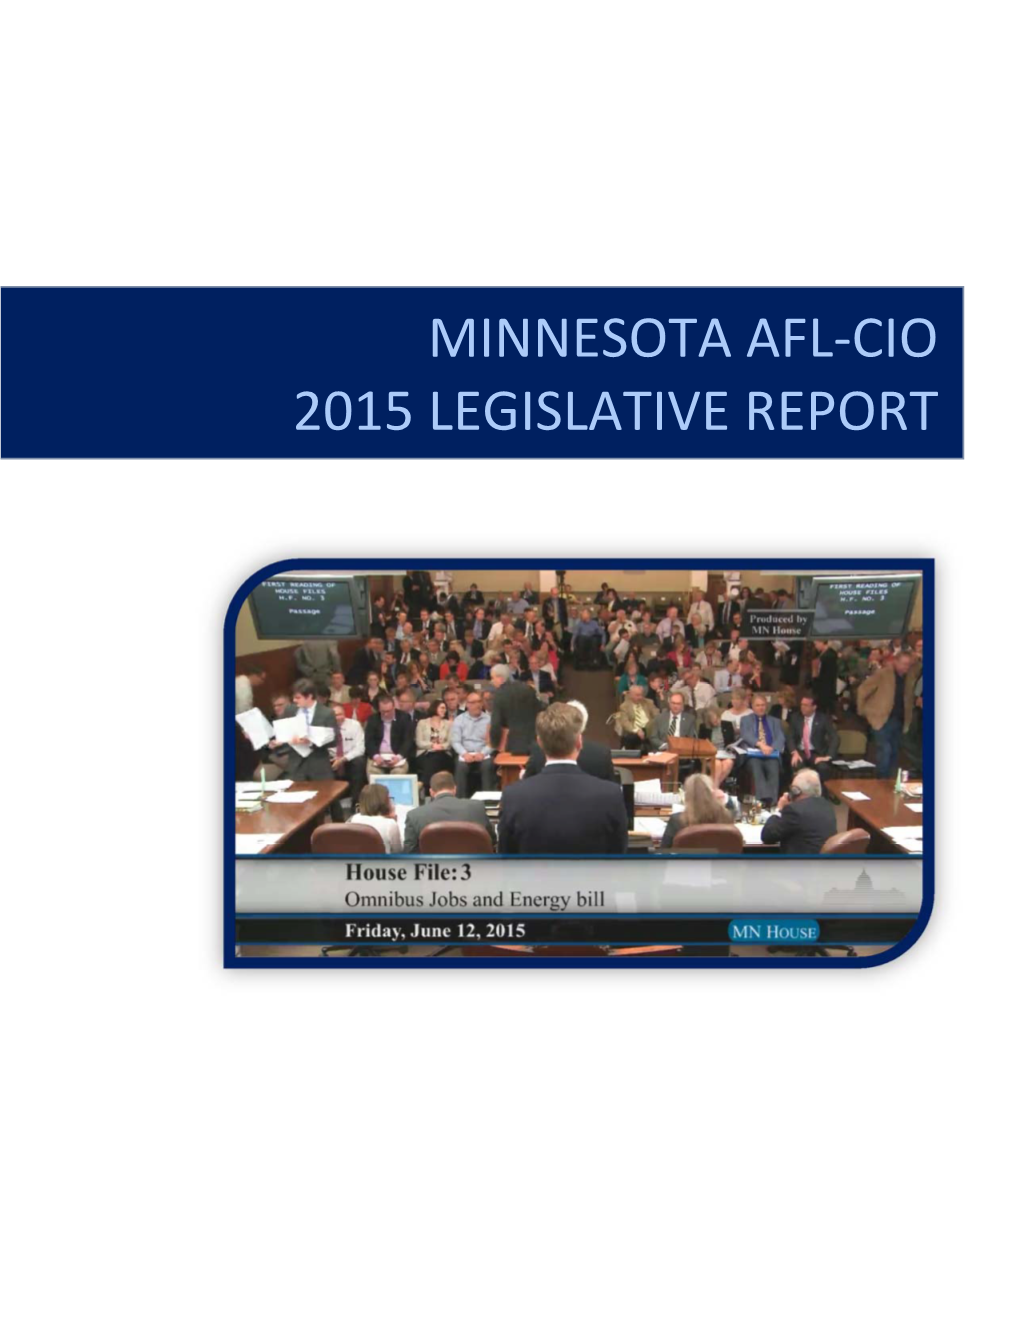 Minnesota Afl-Cio 2015 Legislative Report